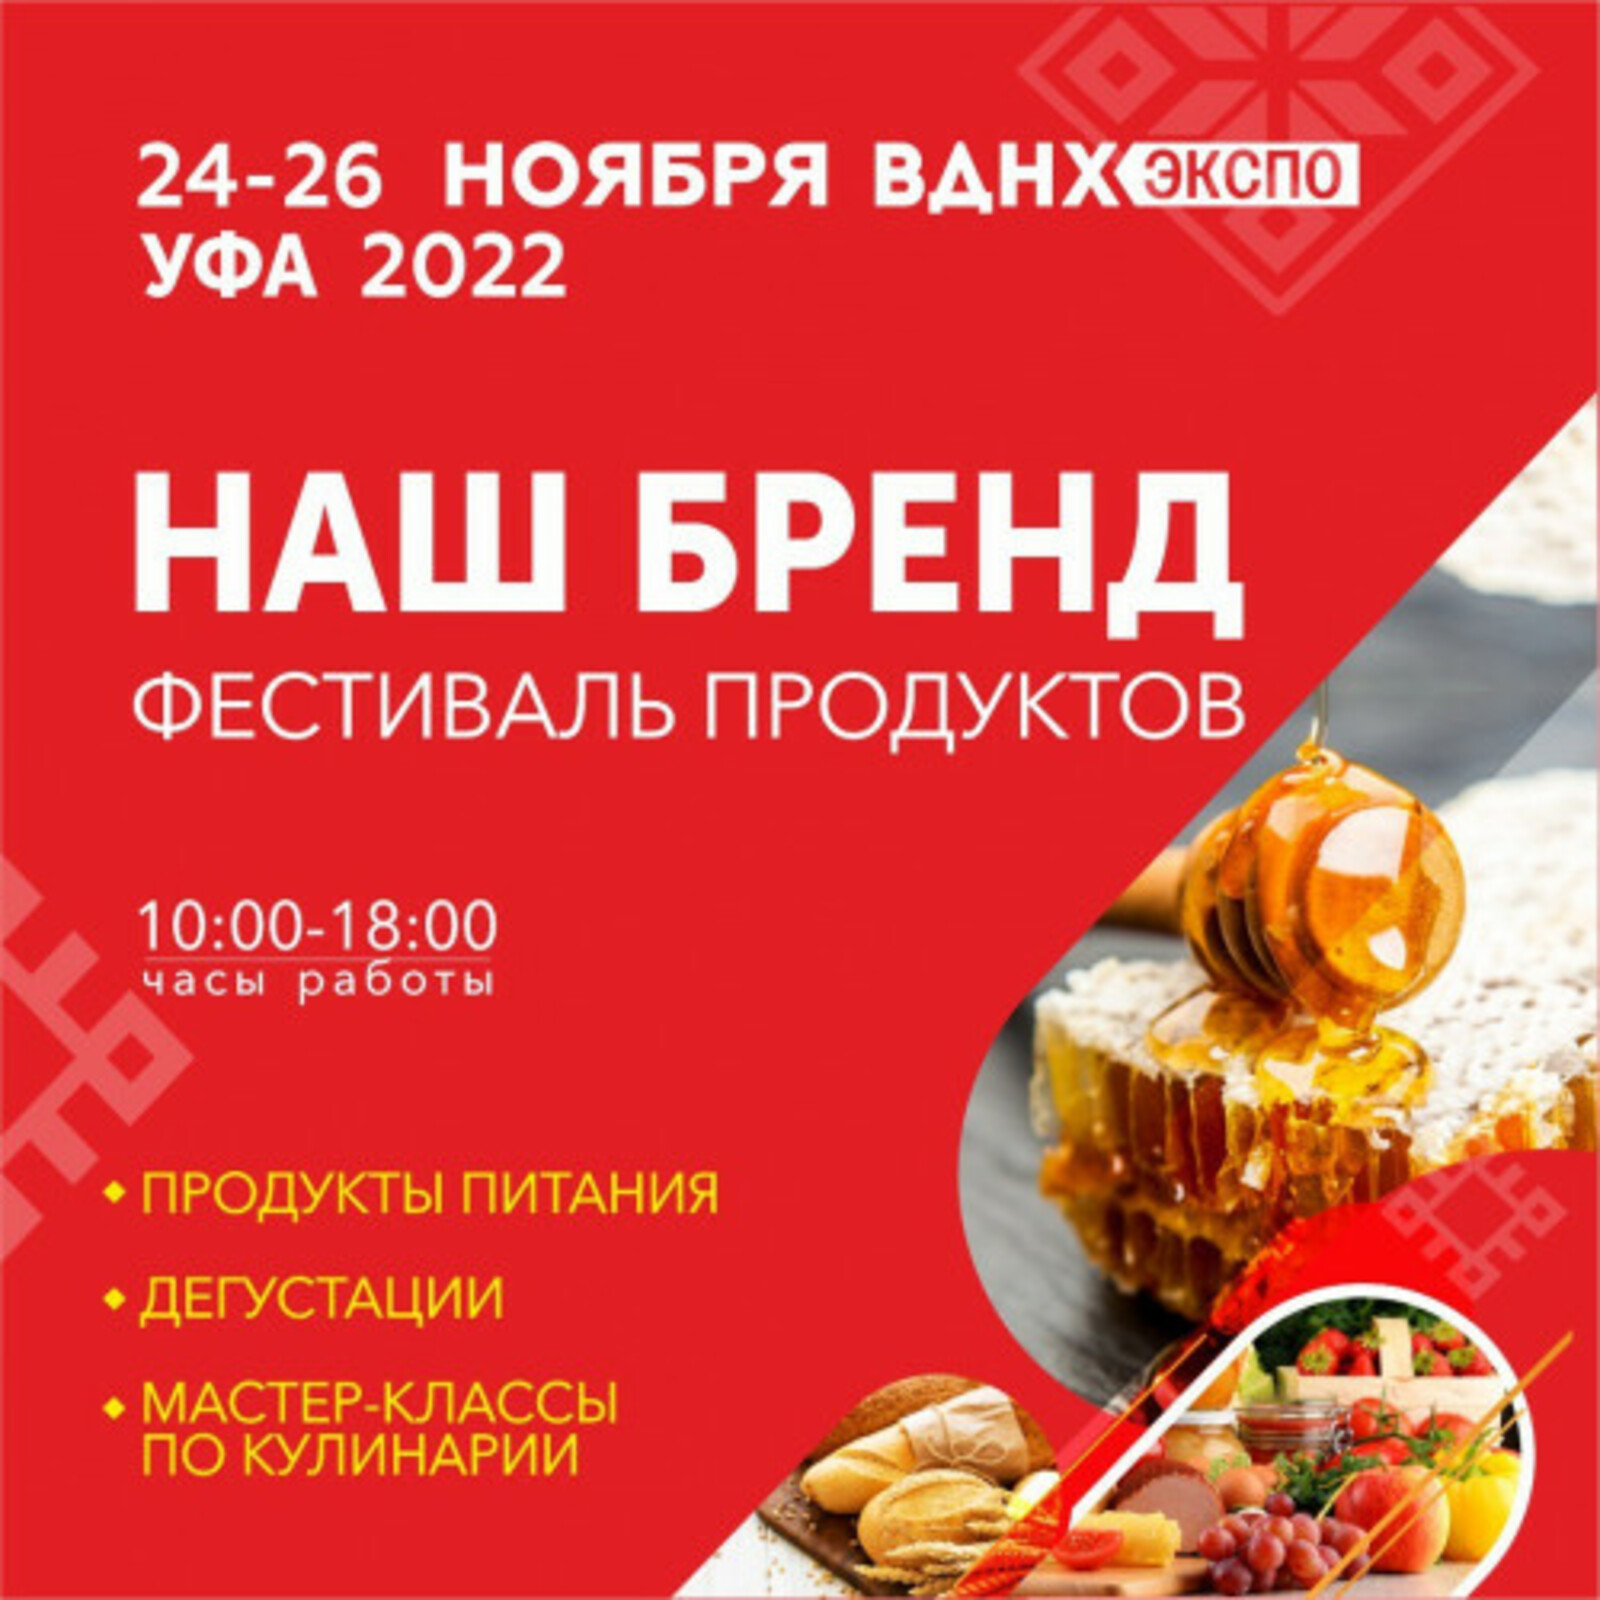 Выставка продуктов питания "Наш бренд" пройдет в Башкирии